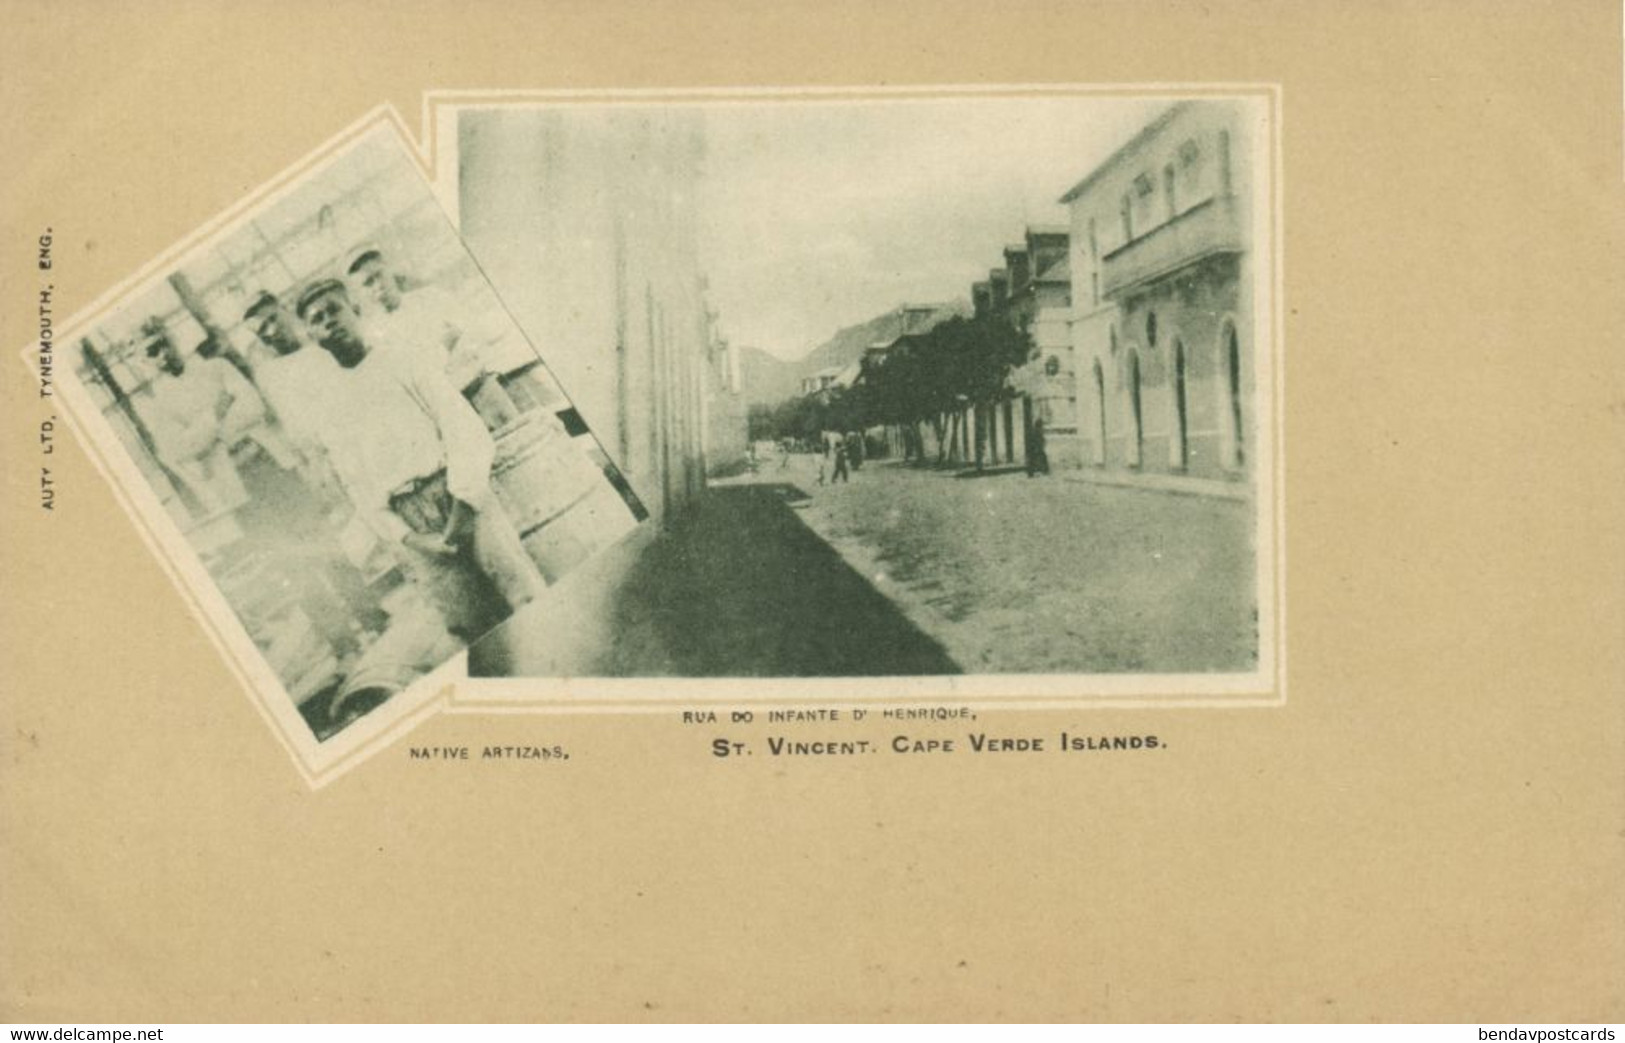 Cape Verde, SÃO VICENTE, Native Artizans, Rua Do Infante D'Henrique (1900s) Postcard - Cap Vert